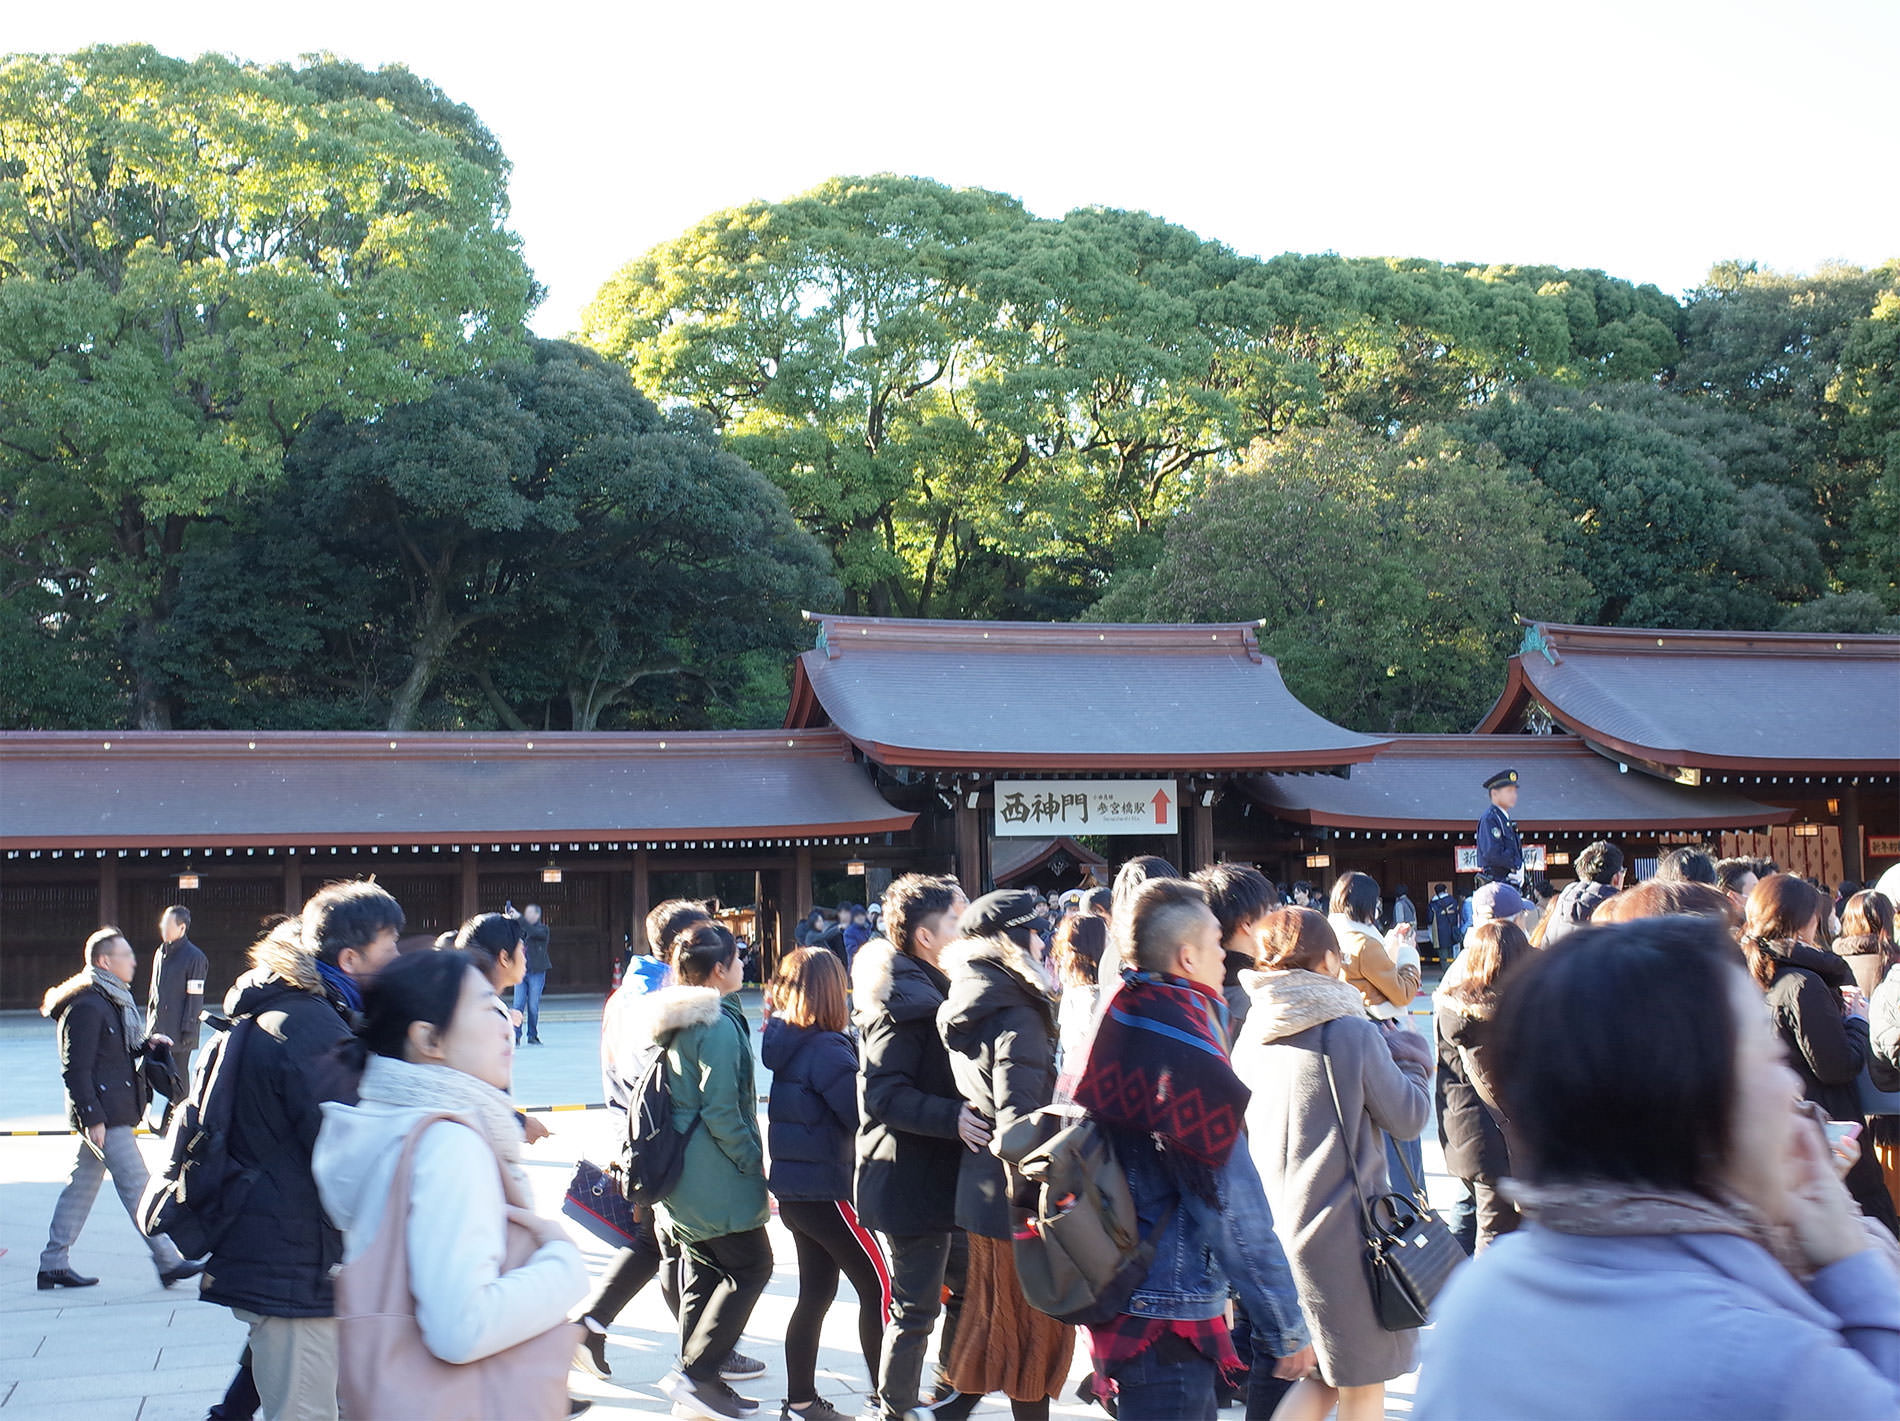 初詣2019 / The first Tokyo's shrine visit of 2019